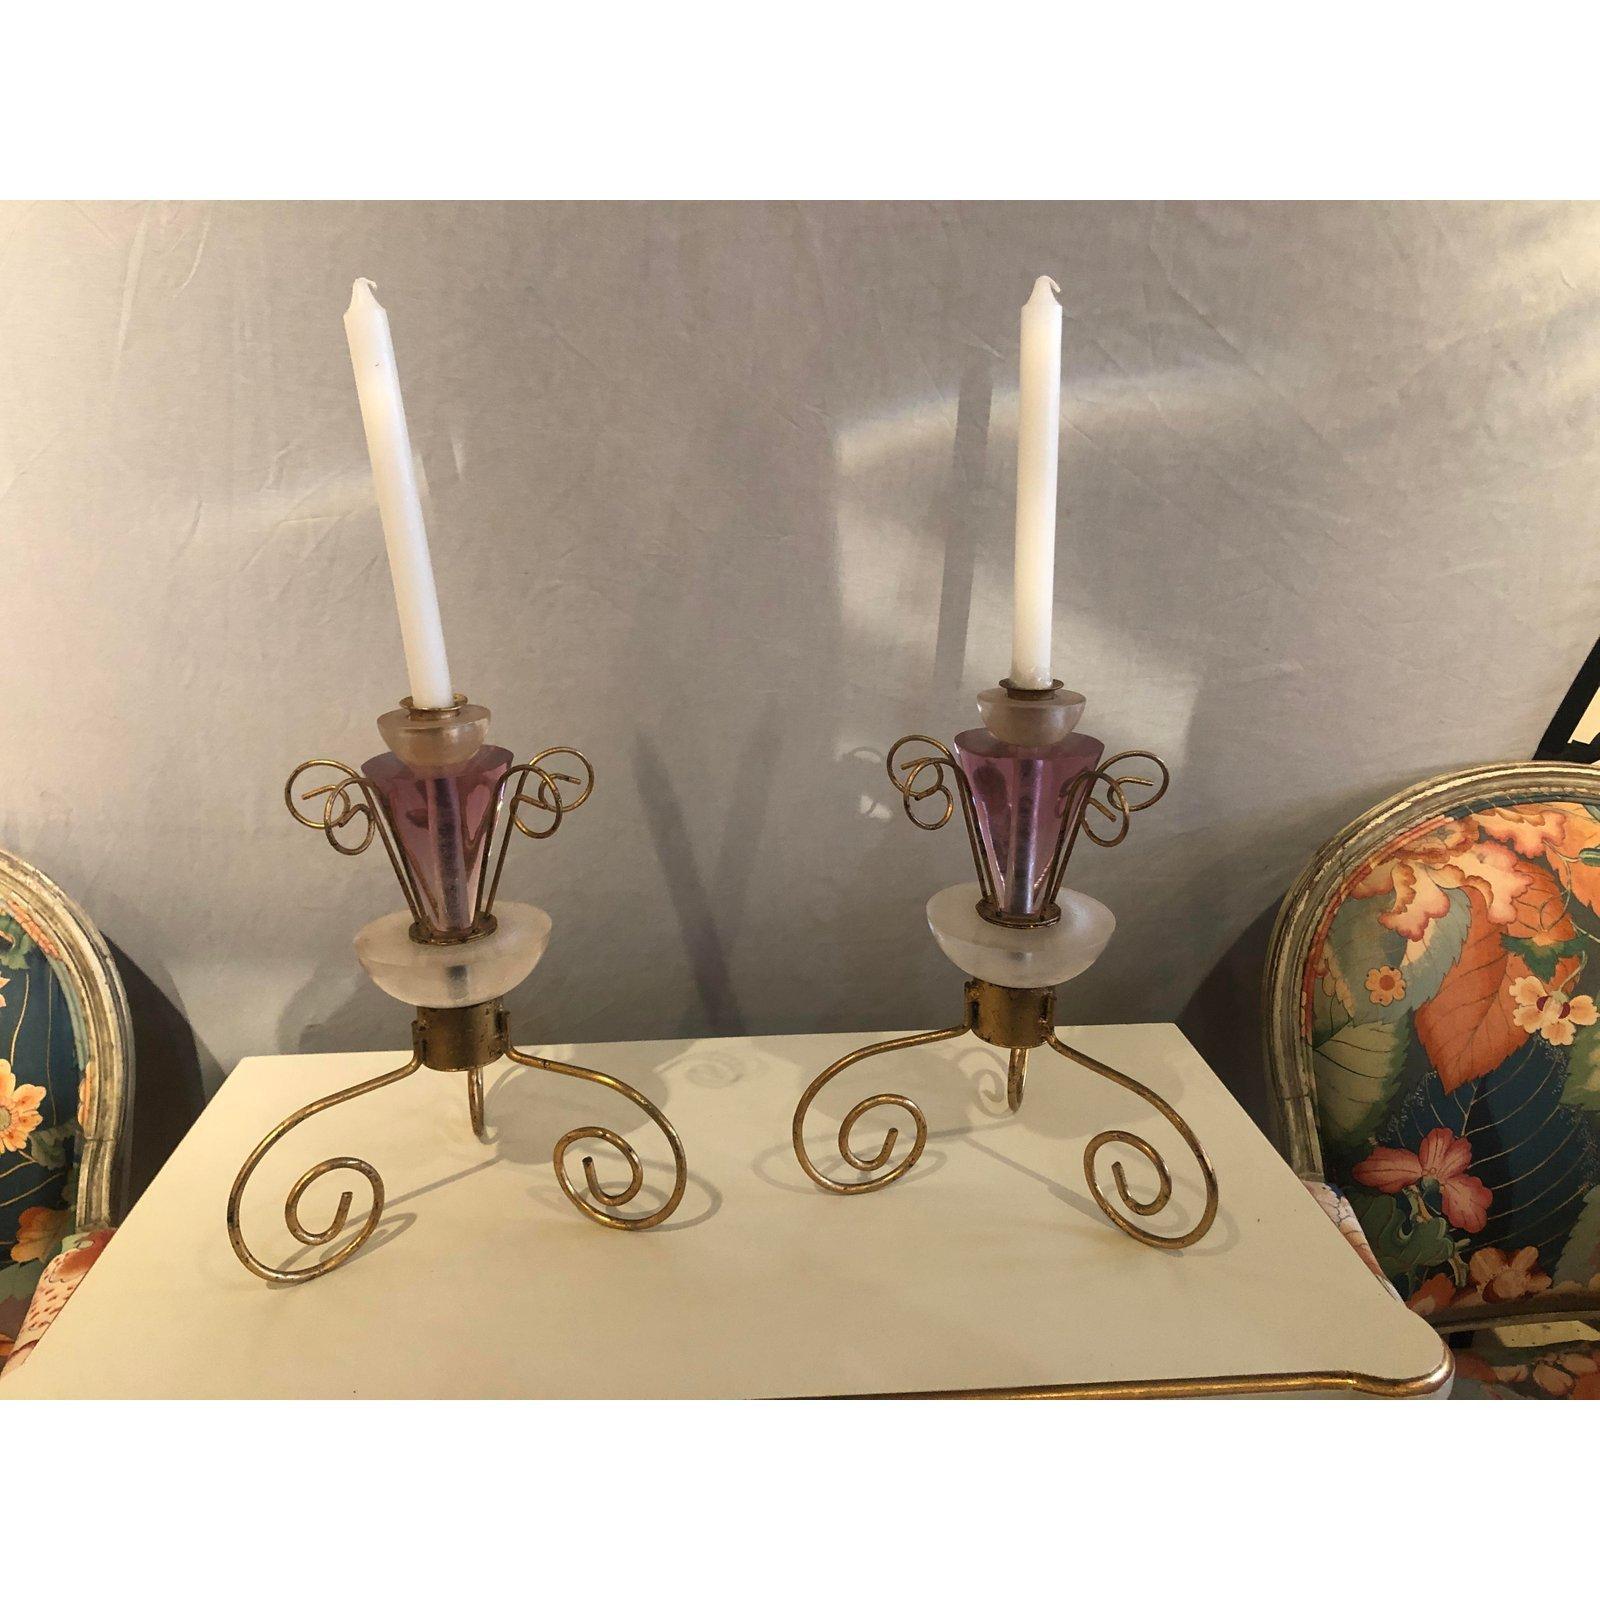 Une magnifique paire de chandeliers Art Déco. Les chandeliers sont fabriqués en Lucite et en métal doré et présentent une jolie couleur rose ou violette qui leur donne du glamour et du style.

Mesures : 10